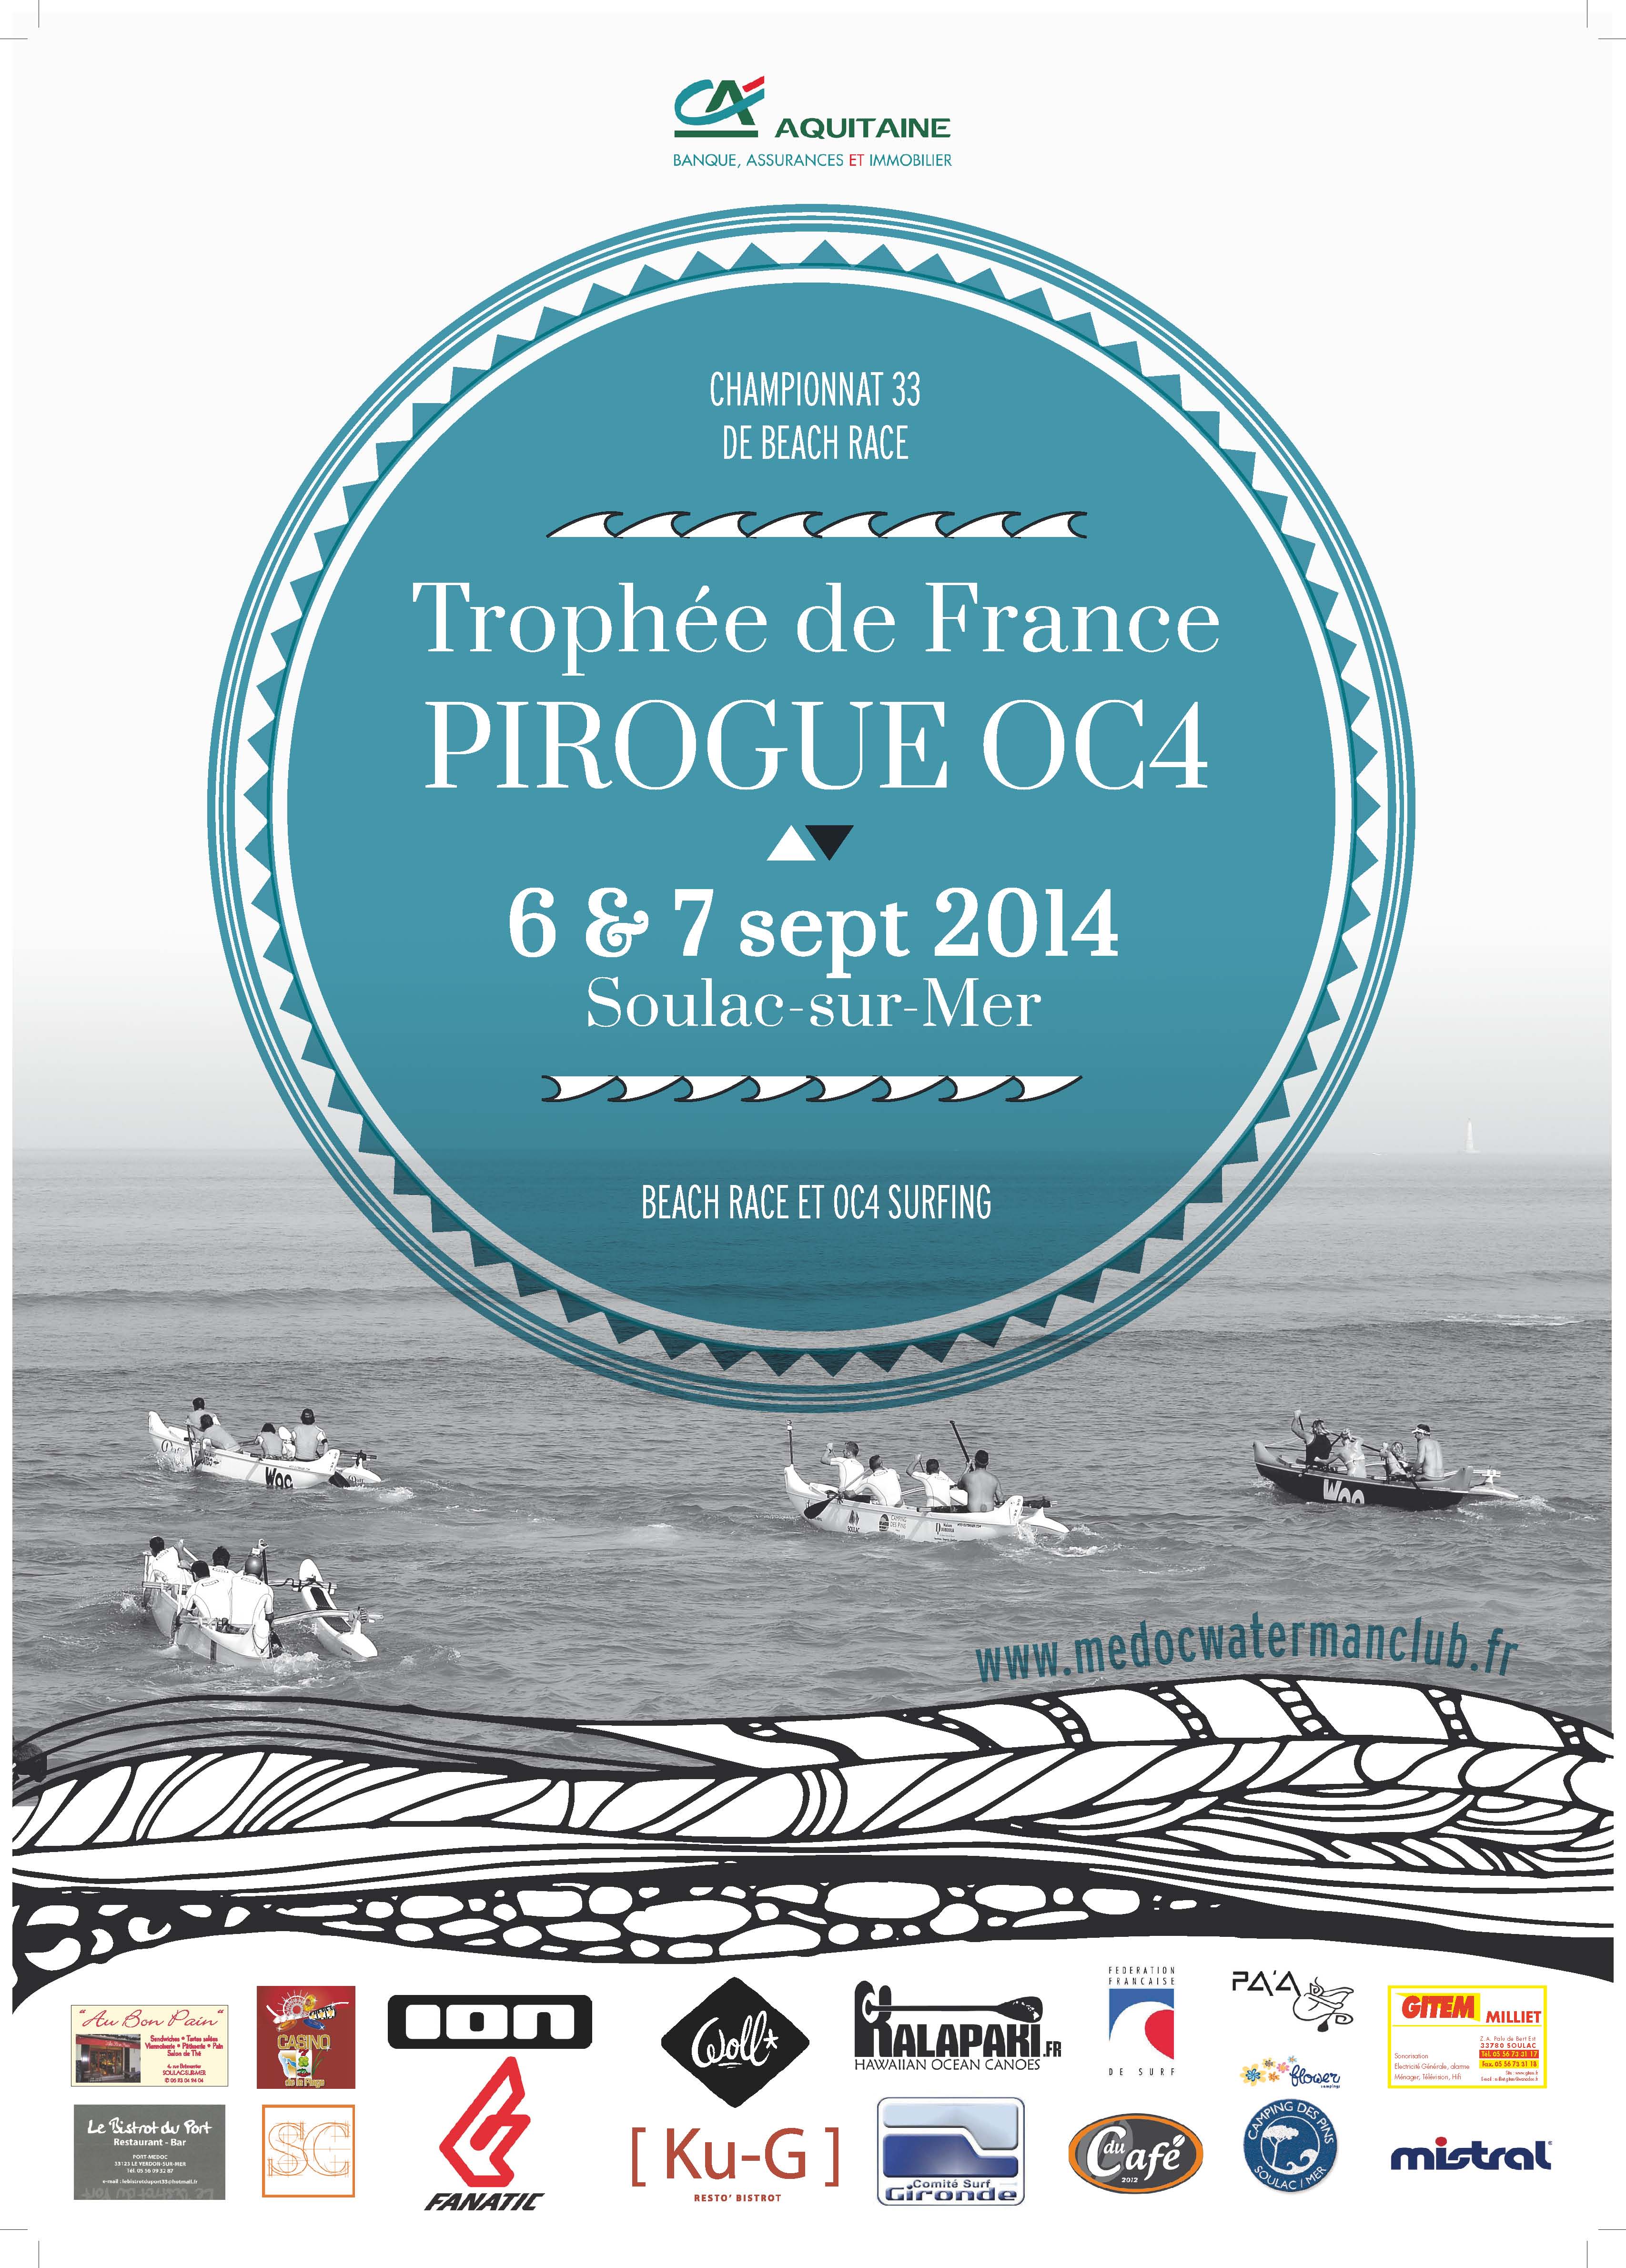 Trophée de France 2014